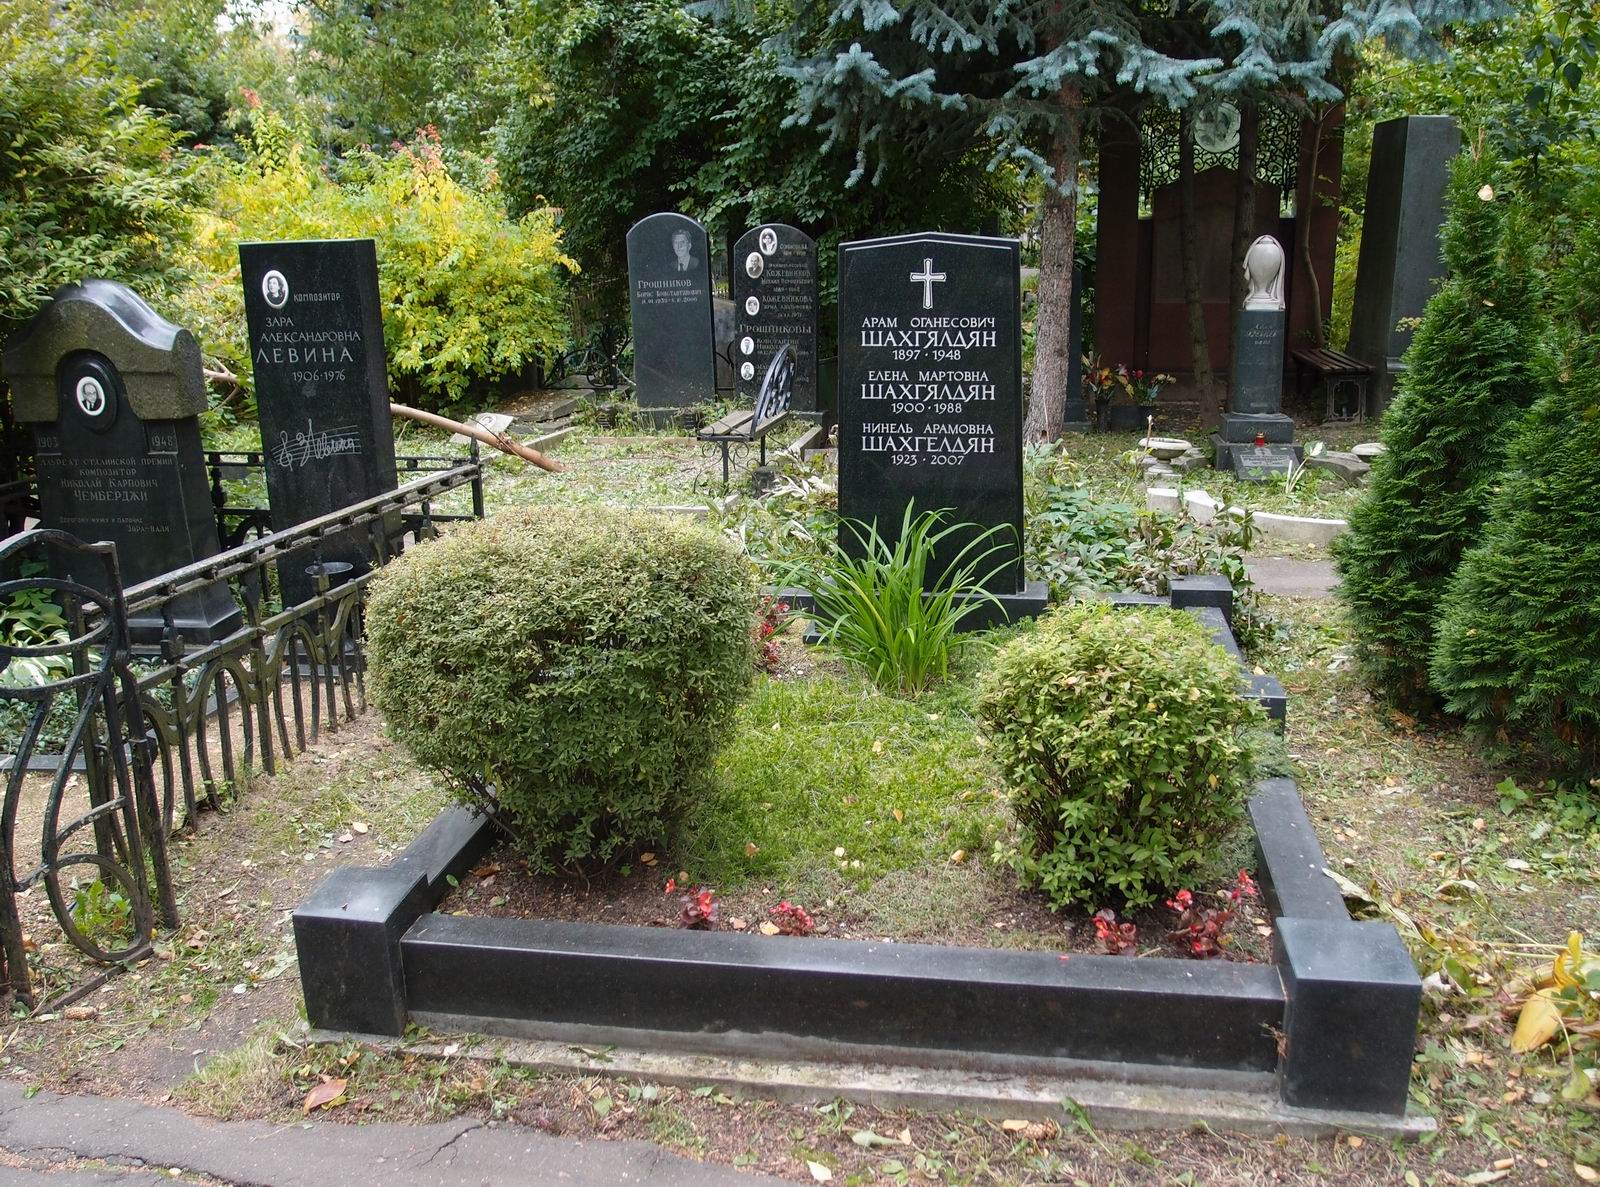 Памятник на могиле Шахгялдяна А.О. (1897-1948), на Новодевичьем кладбище (3-62-19).